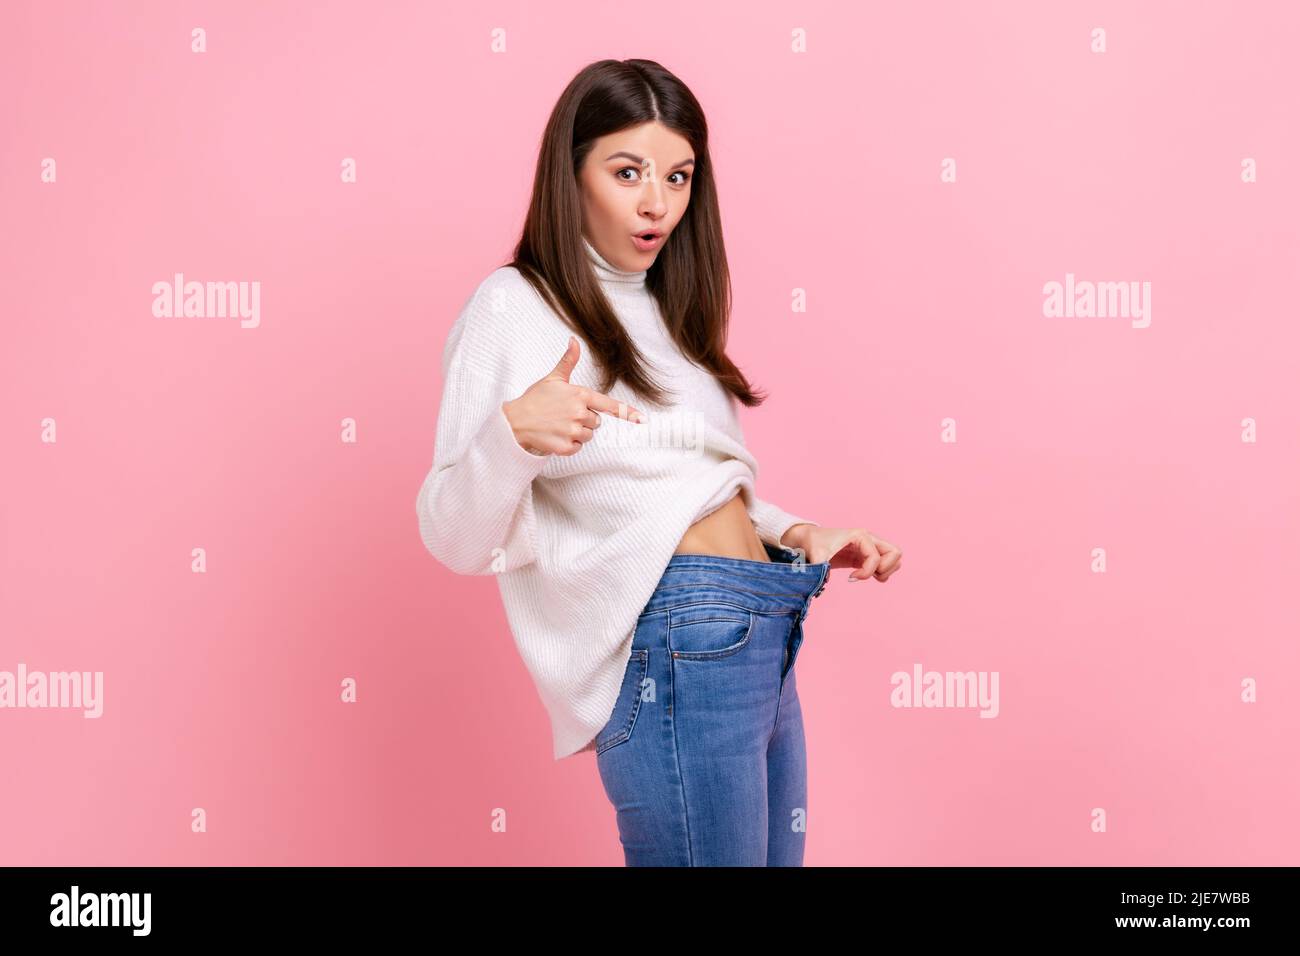 Portrait der schönen überrascht Mädchen zeigt auf schlanke Taille in großen Hosen, erfolgreiche Gewichtsabnahme, trägt weißen lässigen Stil Pullover. Innenaufnahme des Studios isoliert auf rosa Hintergrund. Stockfoto